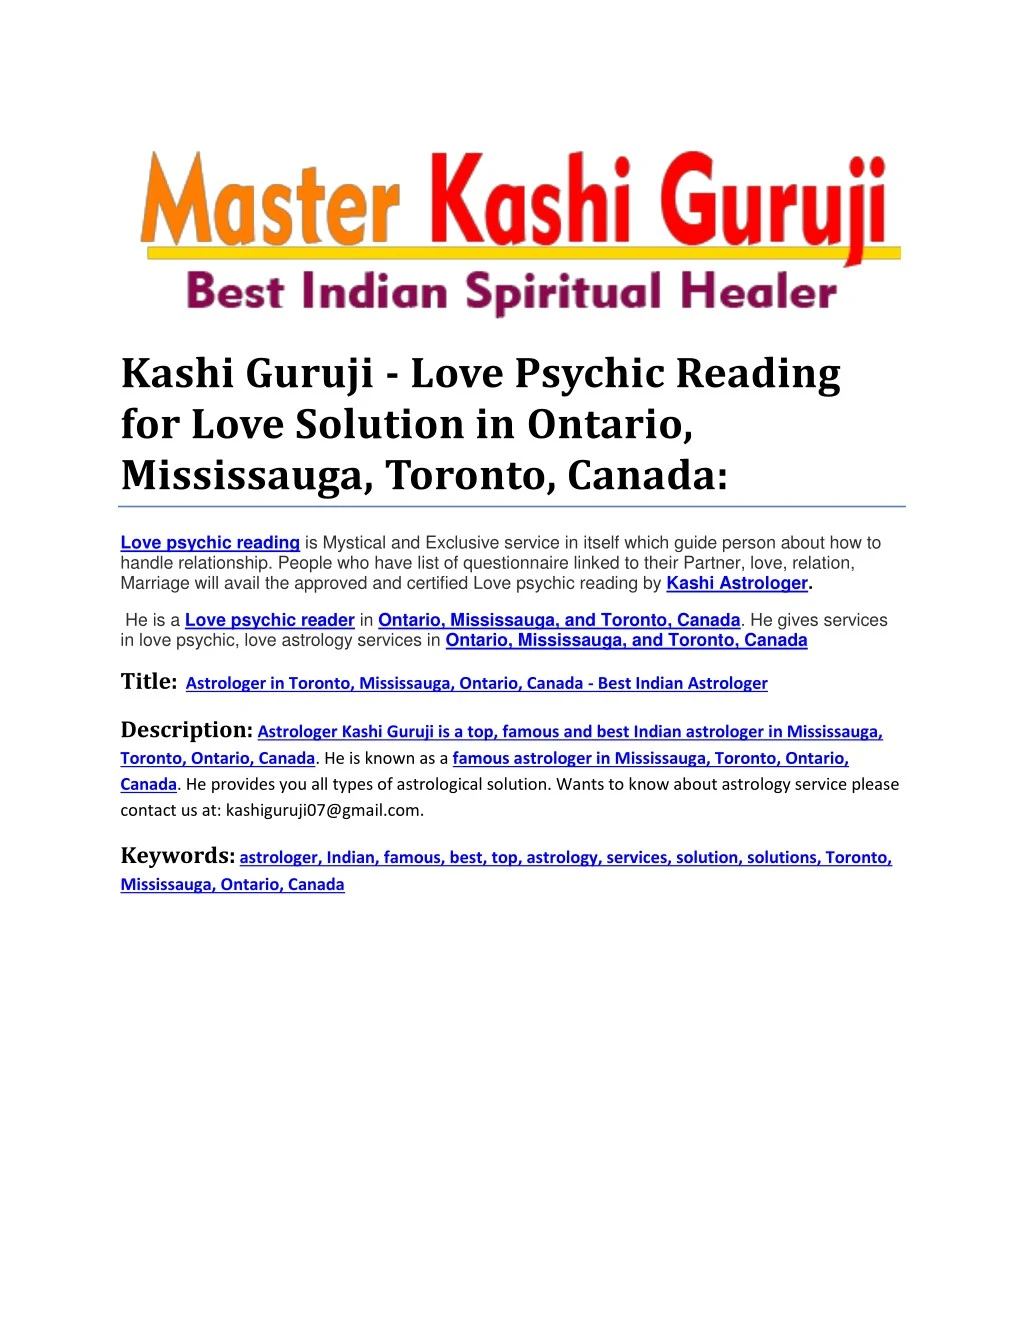 kashi guruji love psychic reading for love